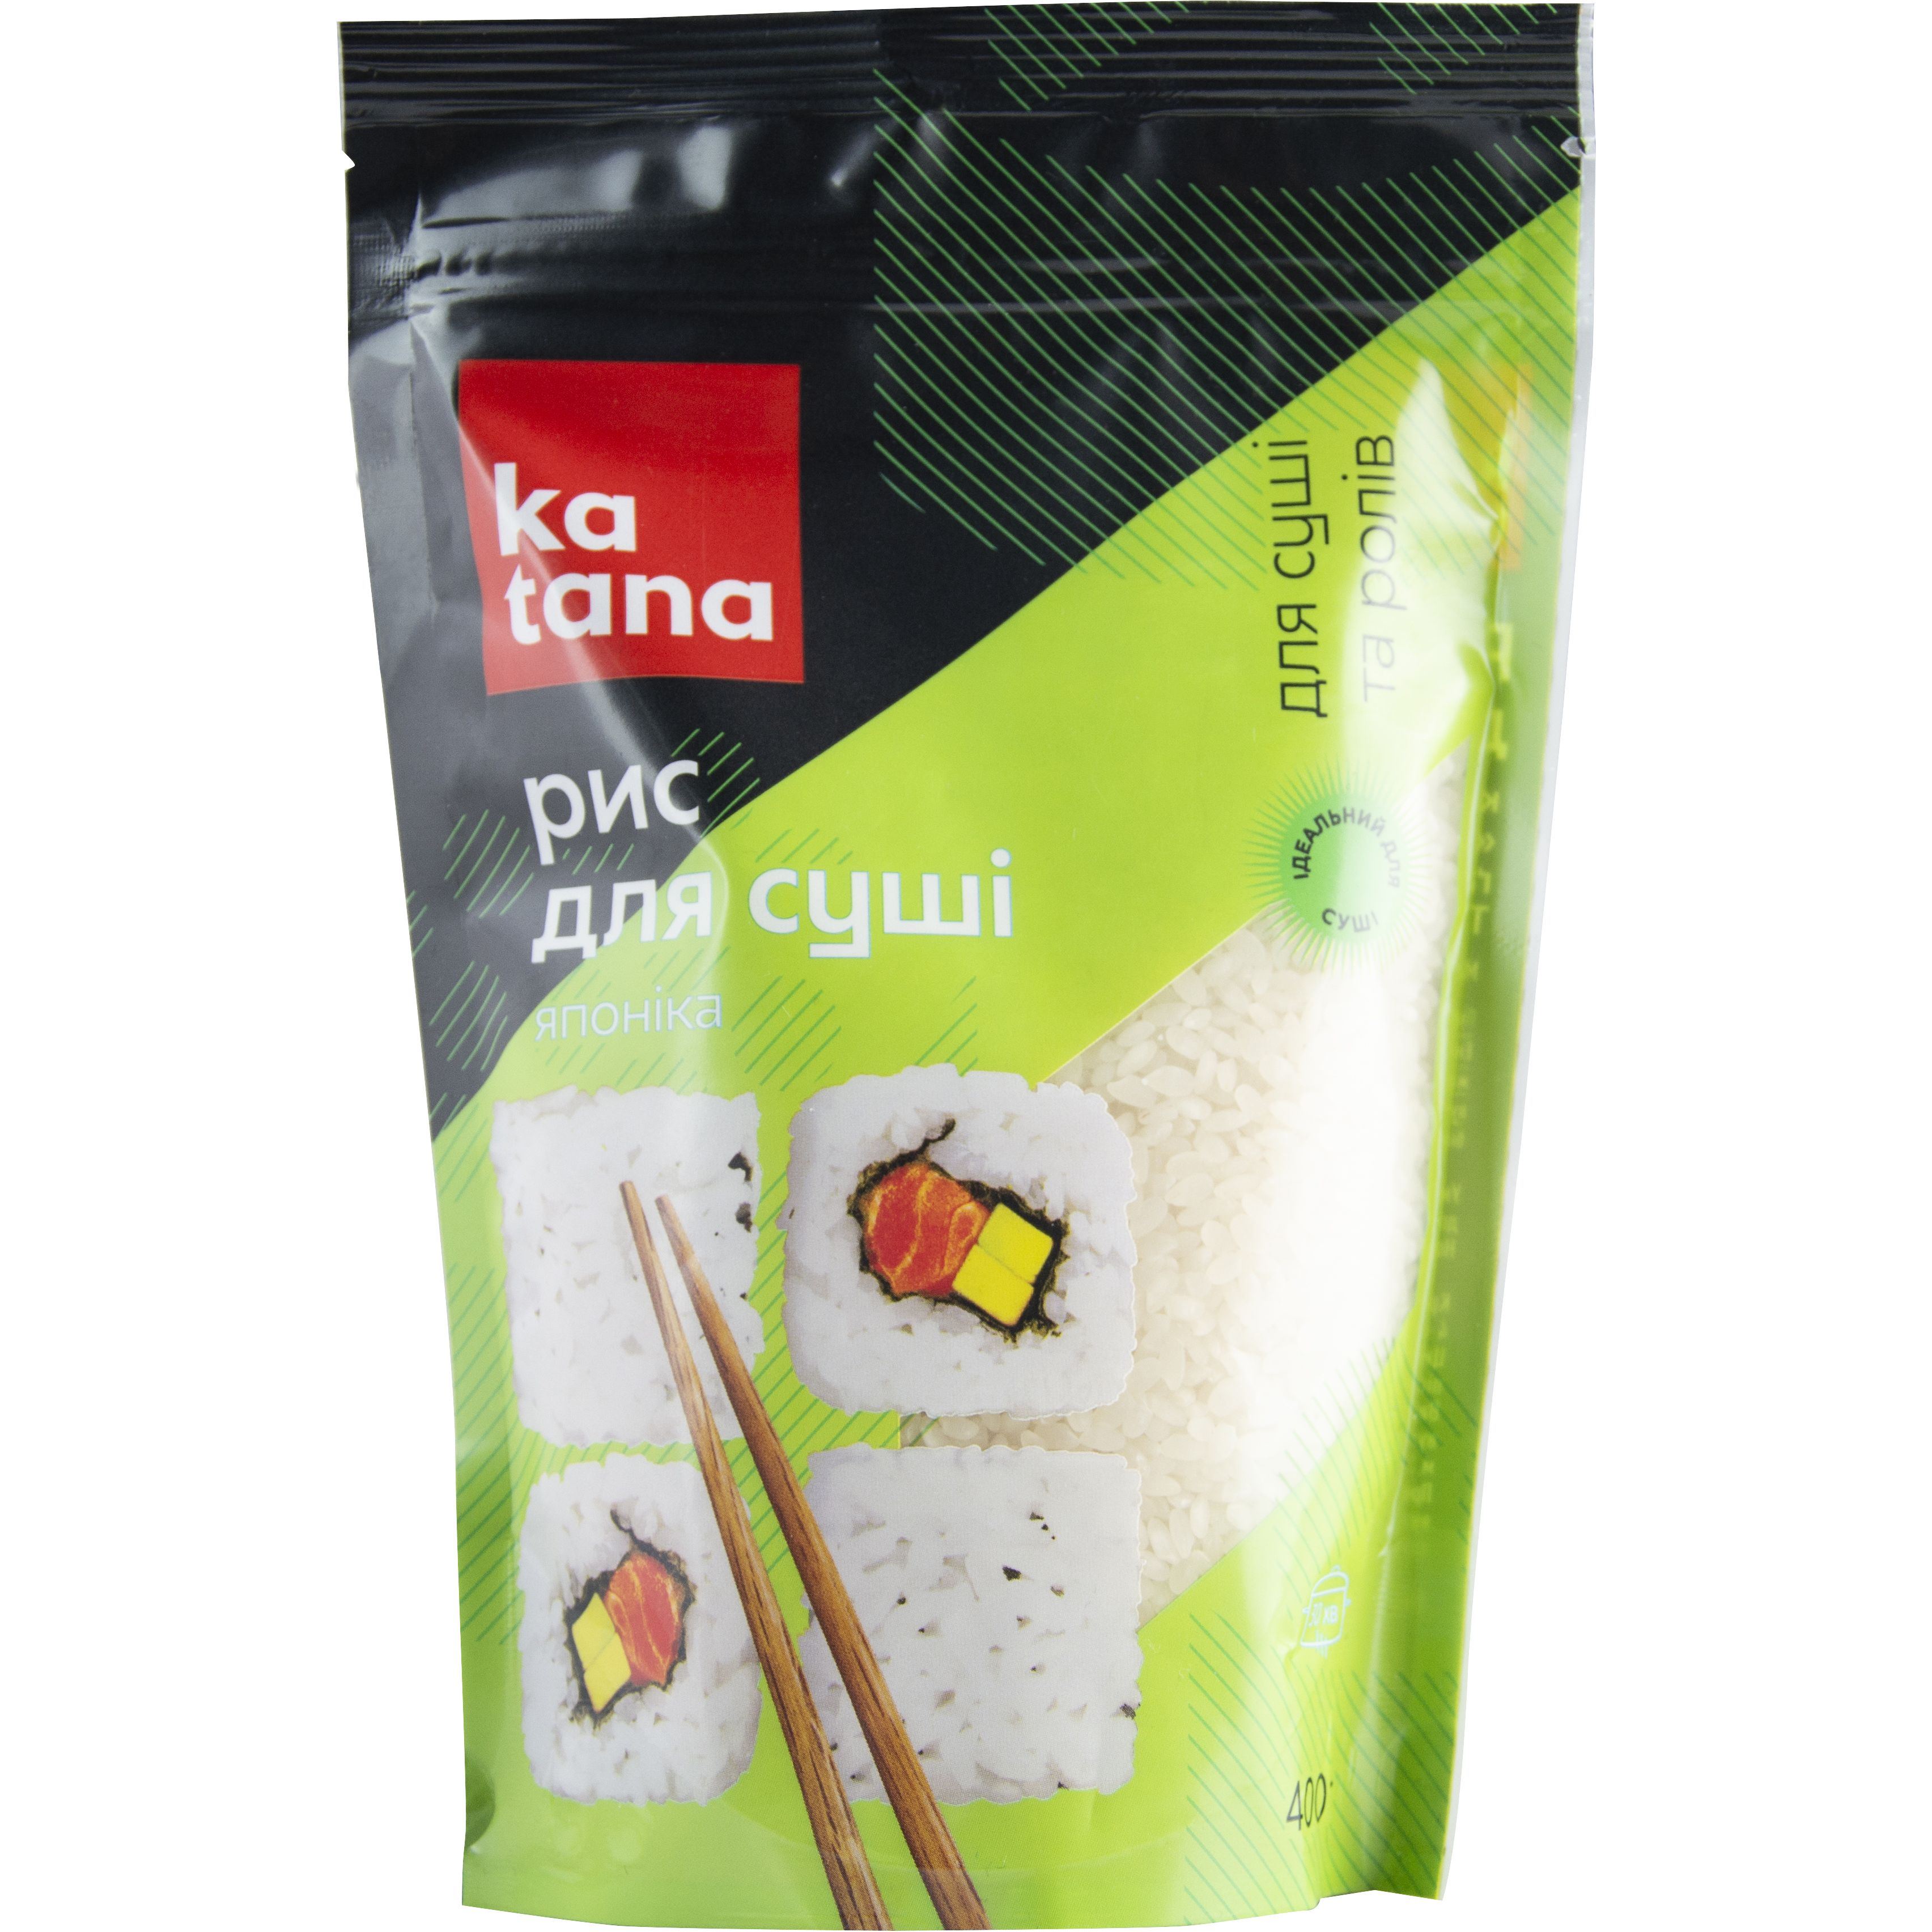 Рис для суши Katana, 400 г (448922) - фото 1